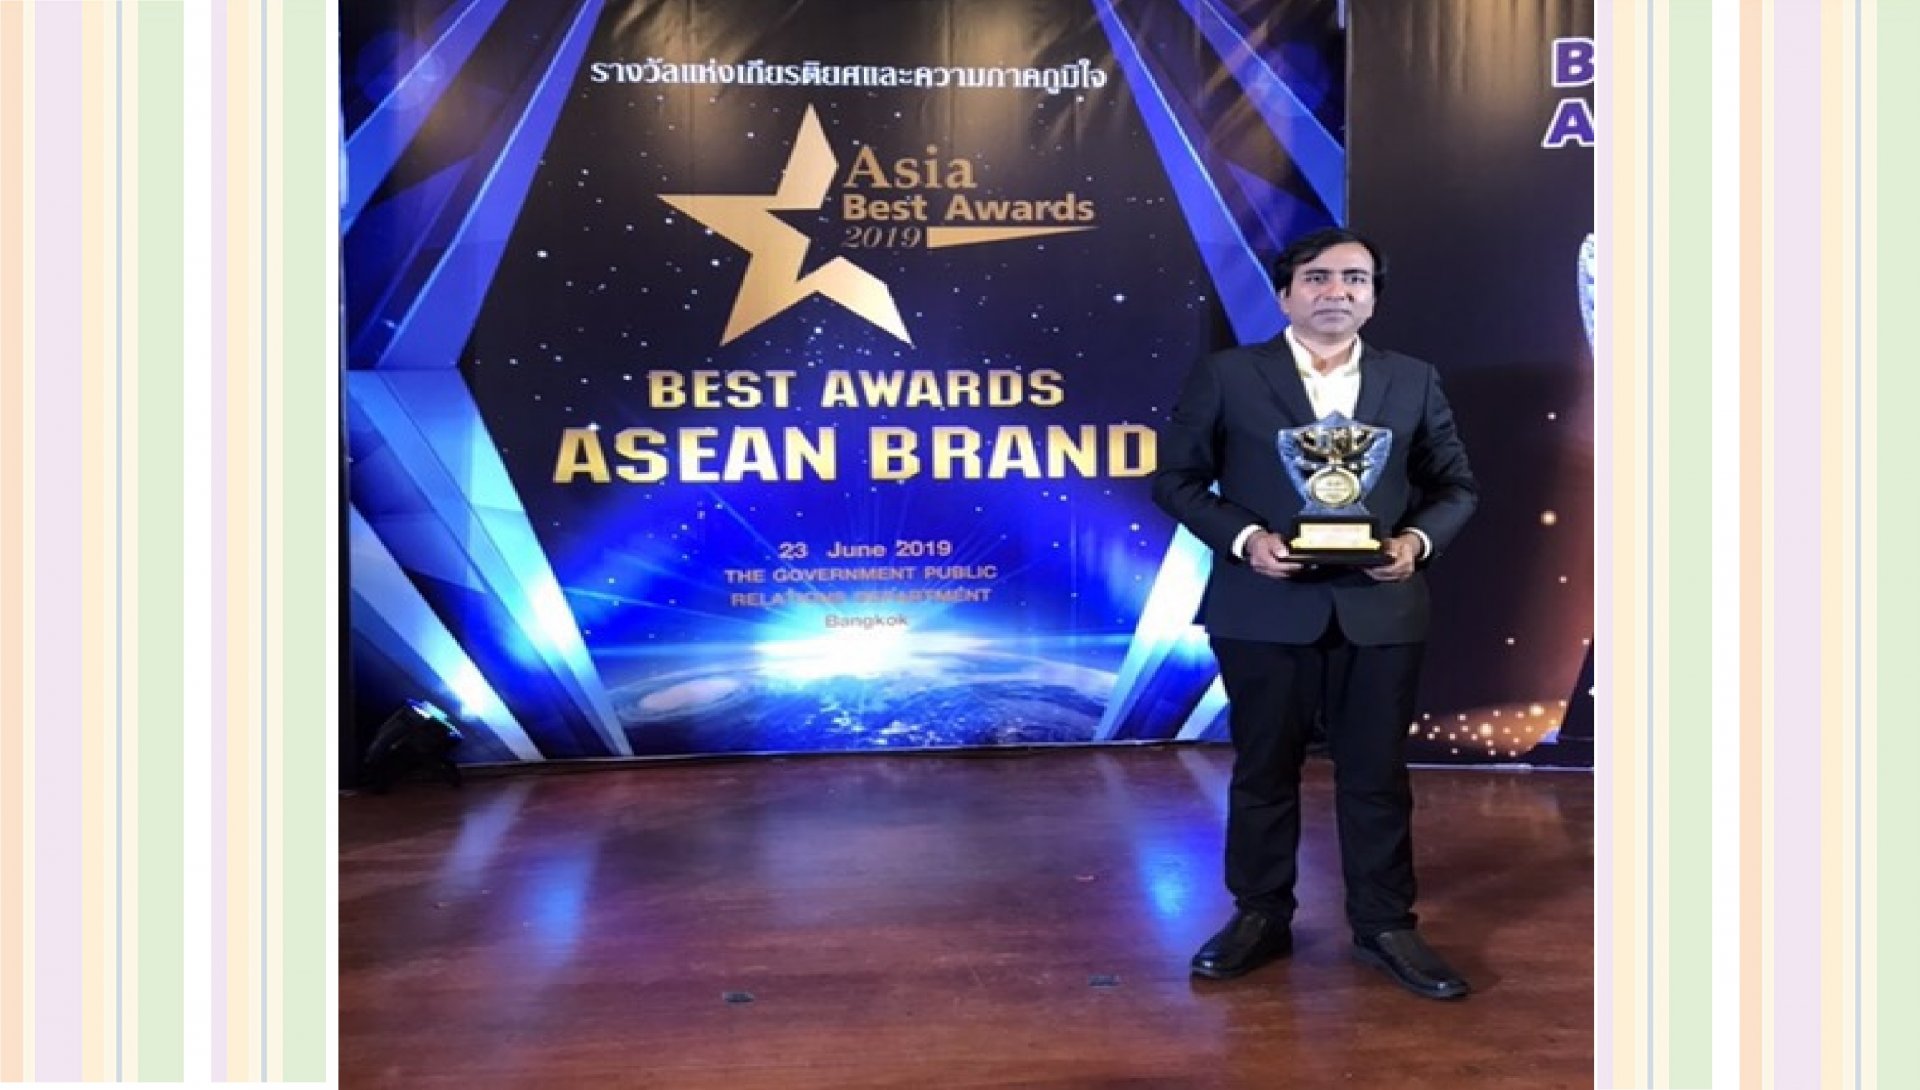 Best awards asean brand 